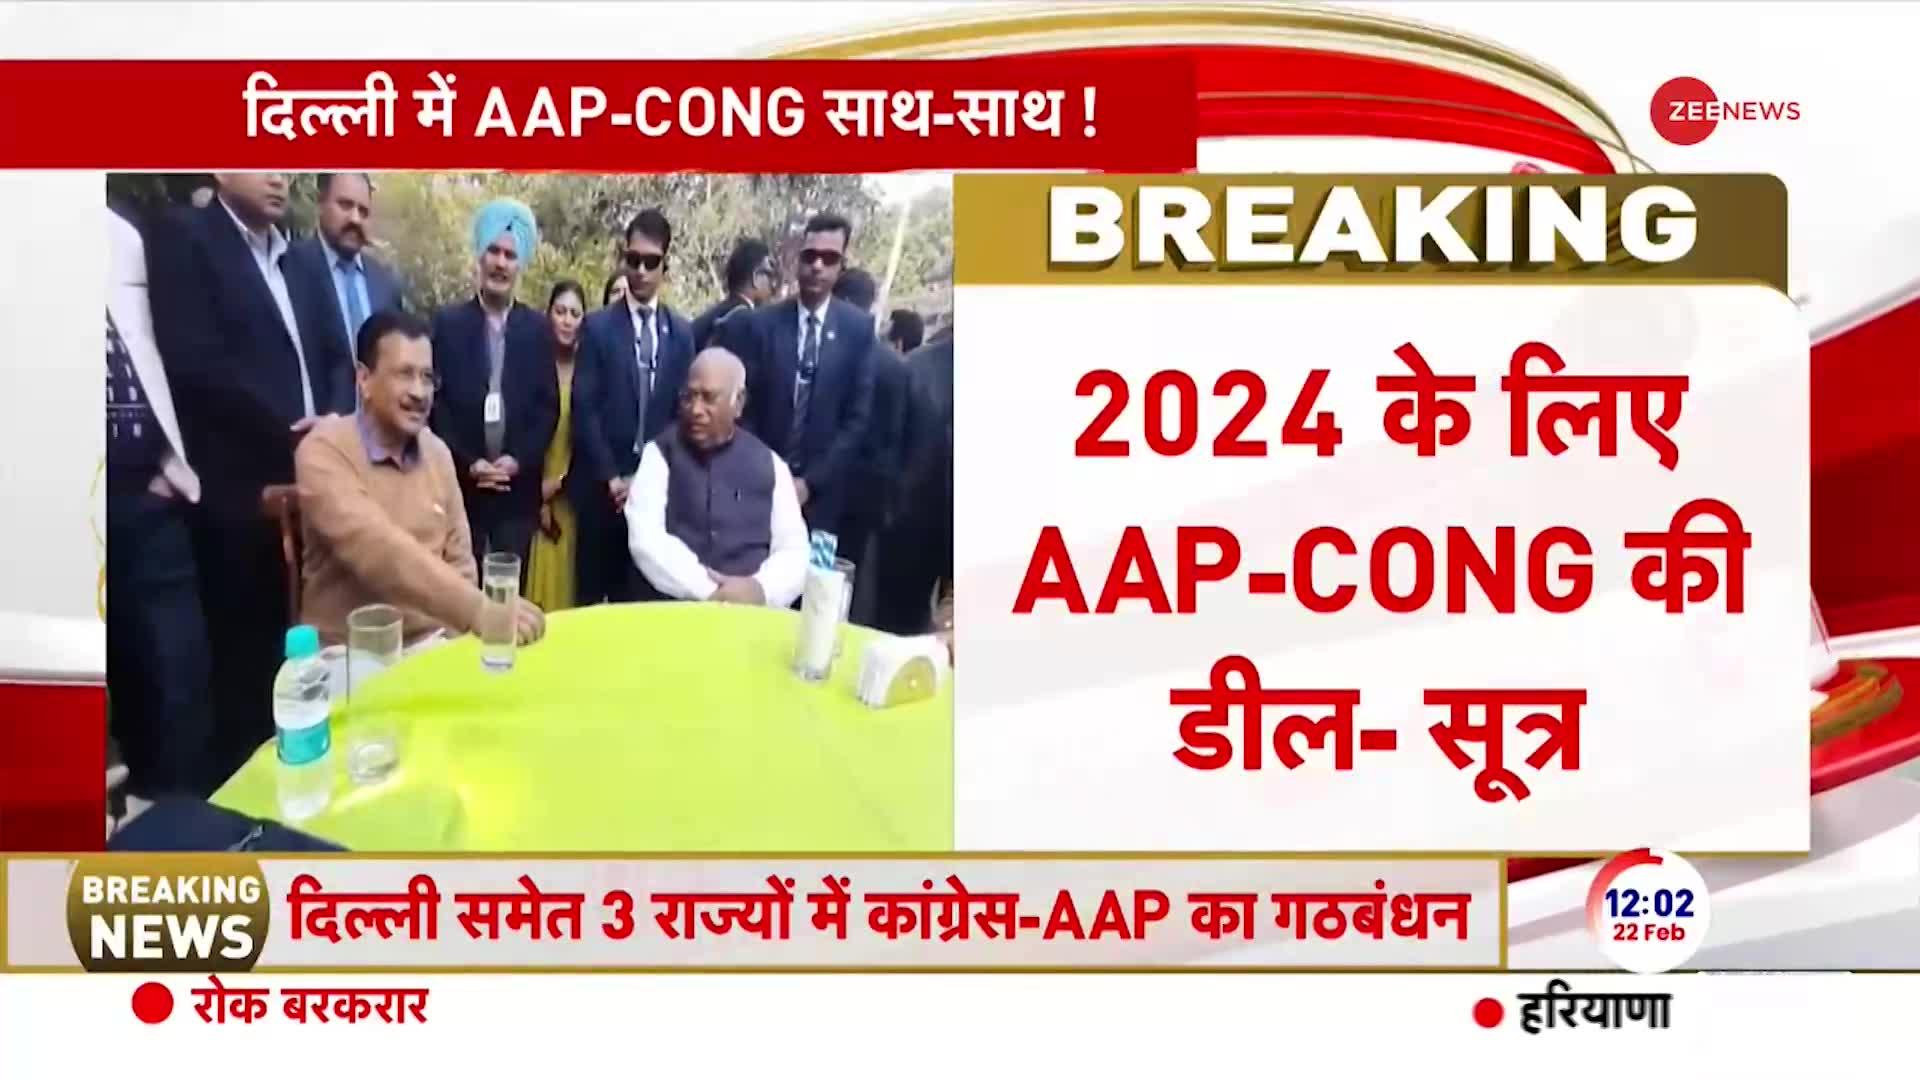 Aap Congress Alliance: दिल्ली की 7 सीटों पर 'AAP' के साथ 'हाथ'